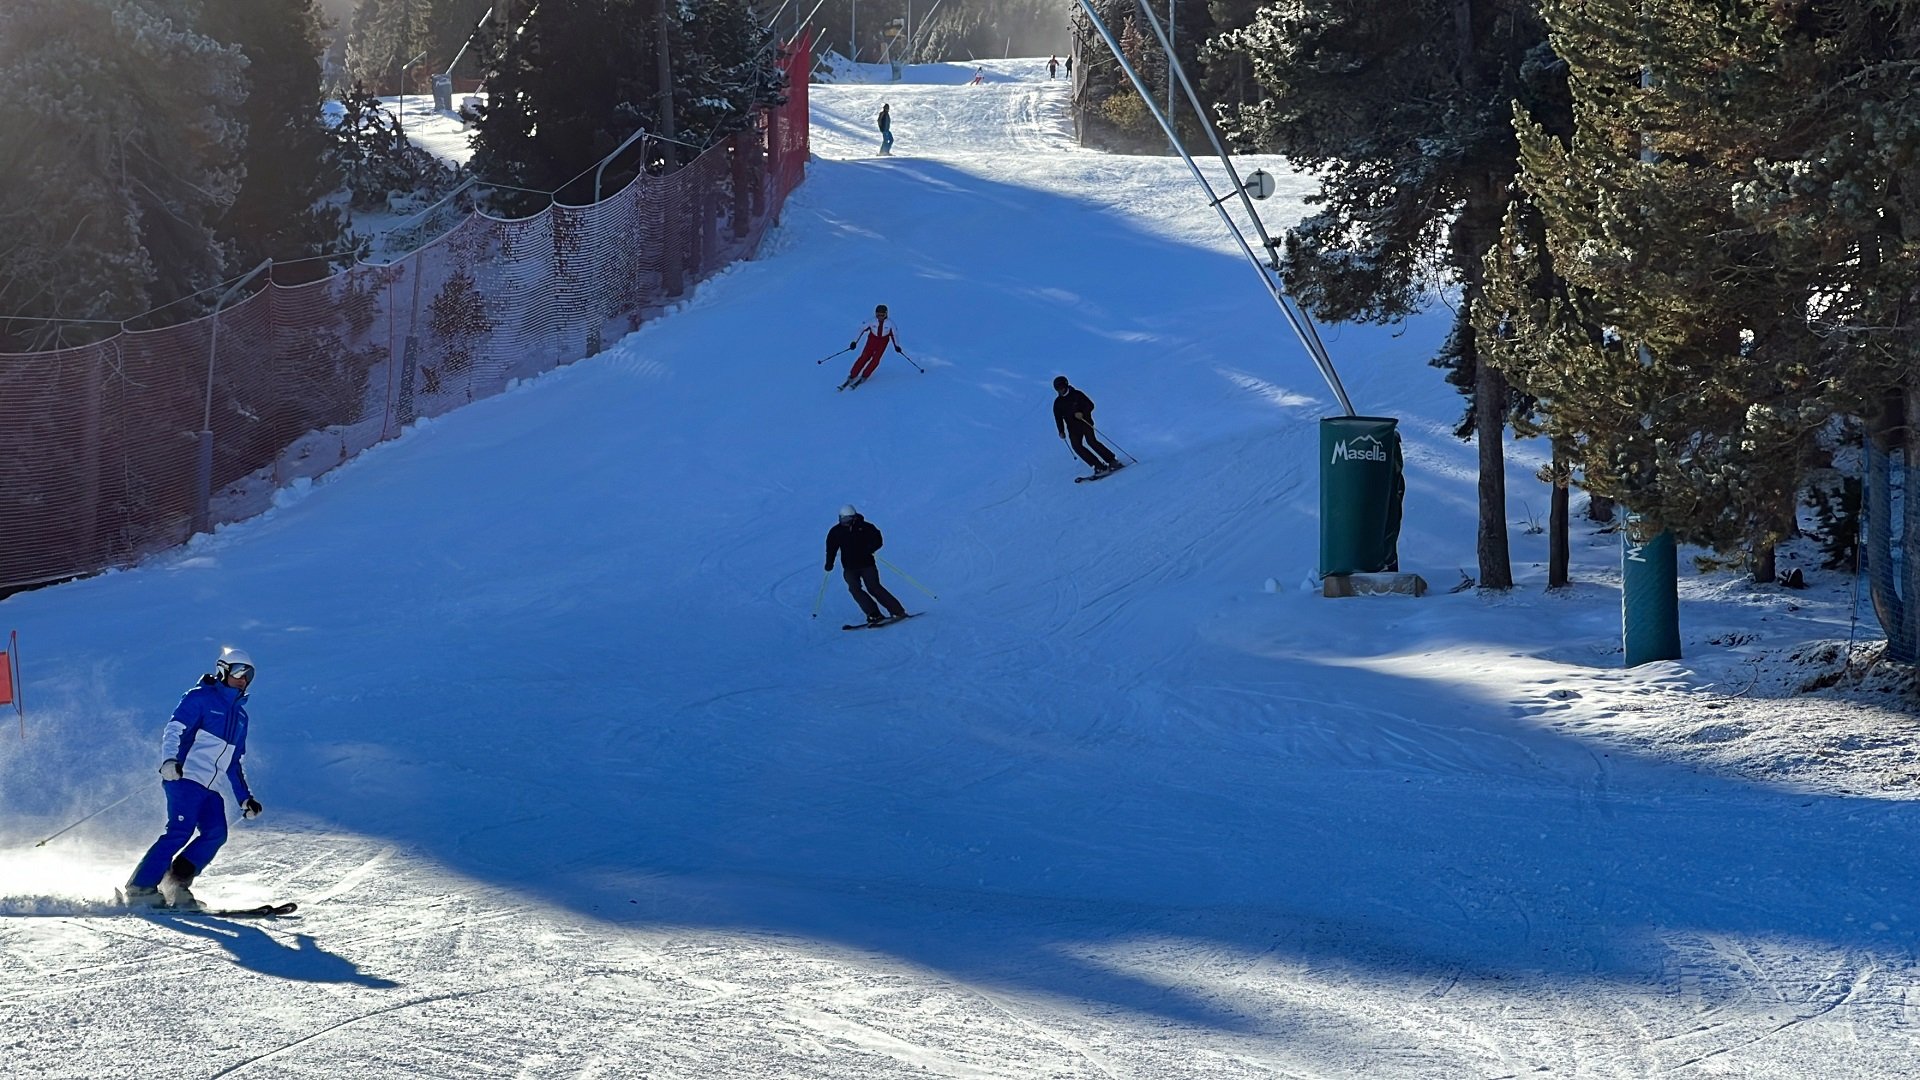 Comença la temporada d'esquí a les estacions de FGC: Port Ainé, Masella i La Molina